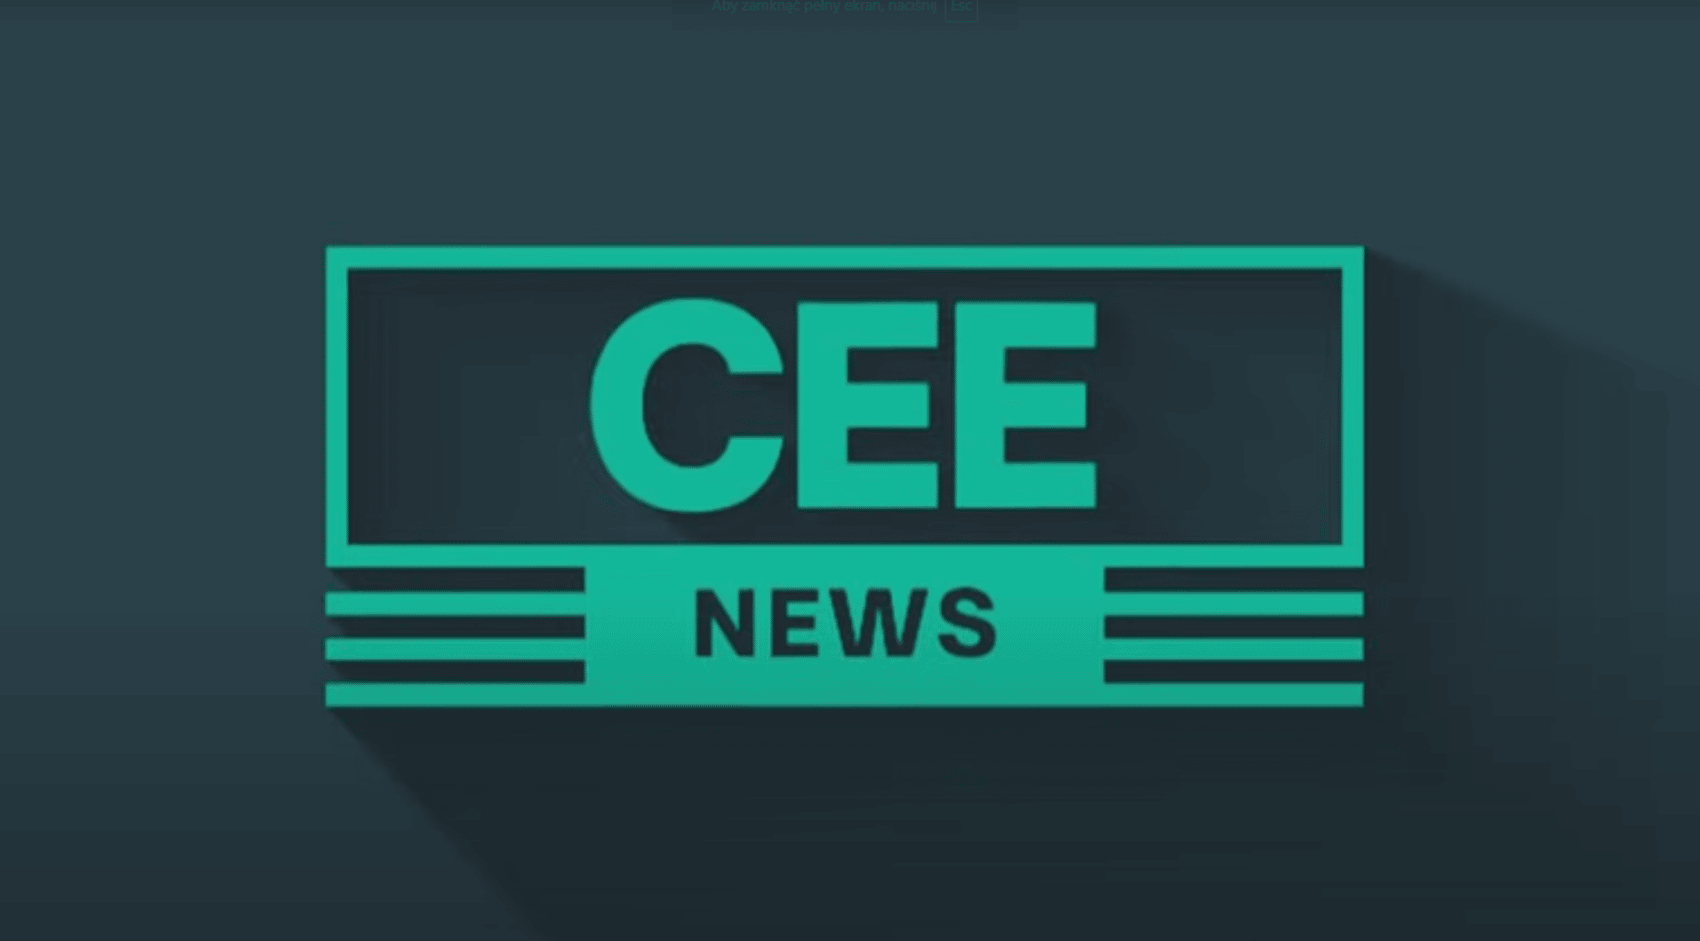 Logo portalu CEE News. Na szarym polu zielona ramka, duży zielony napis CEE, pod spodem mniejszymi literami NEWS